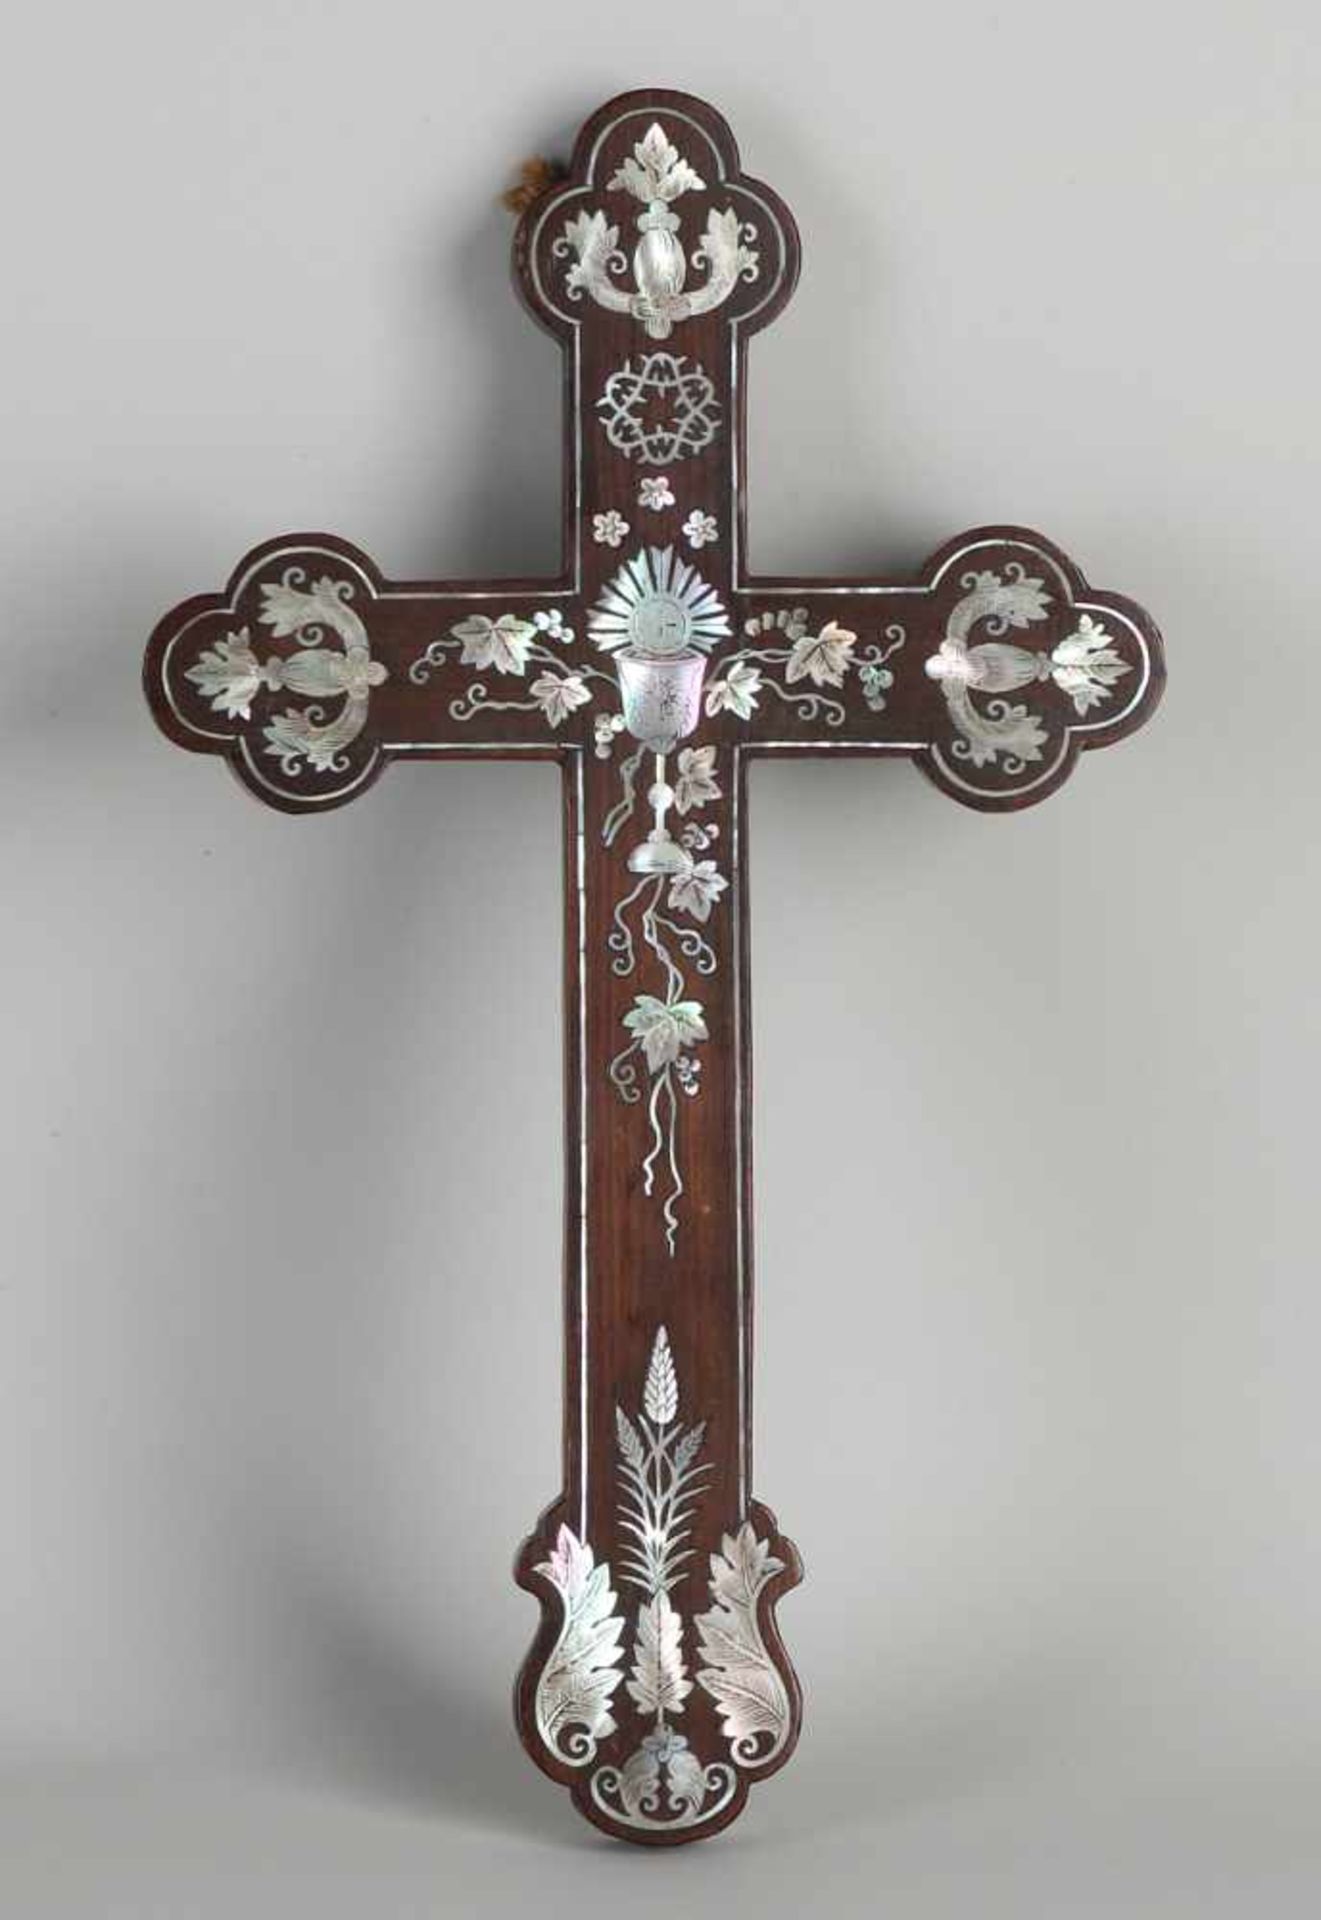 Heiliges Kreuz aus Mahagoni des 19. Jahrhunderts mit wunderschön eingelegter Perlmutt-Intarsie.